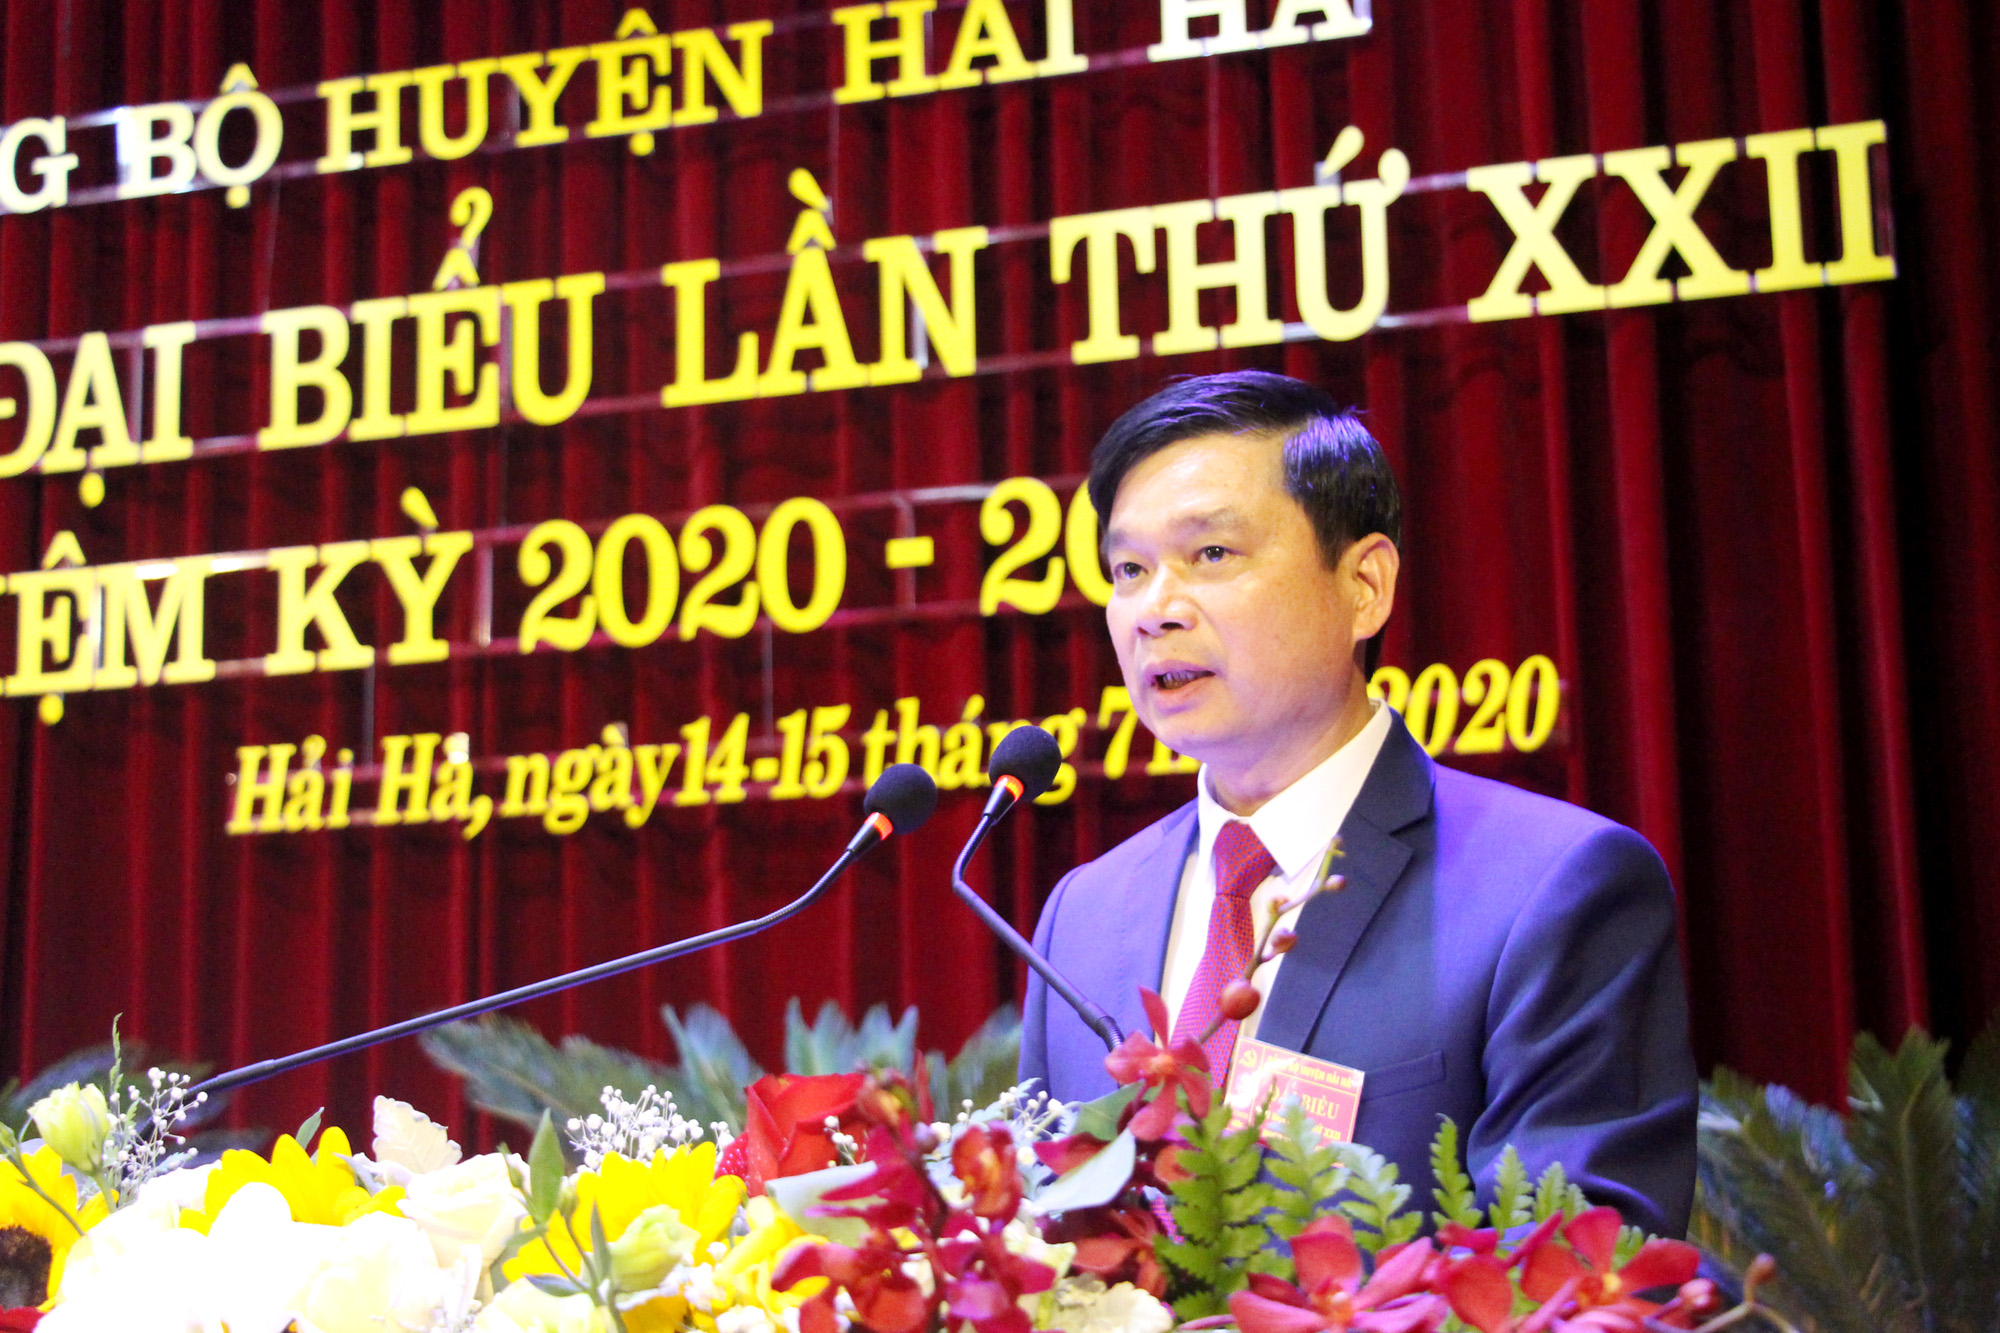 Đồng chí Phạm Xuân Đài, Bí thư Huyện ủy Hải Hà, trình bày báo cáo chinh trị tại đại hội.